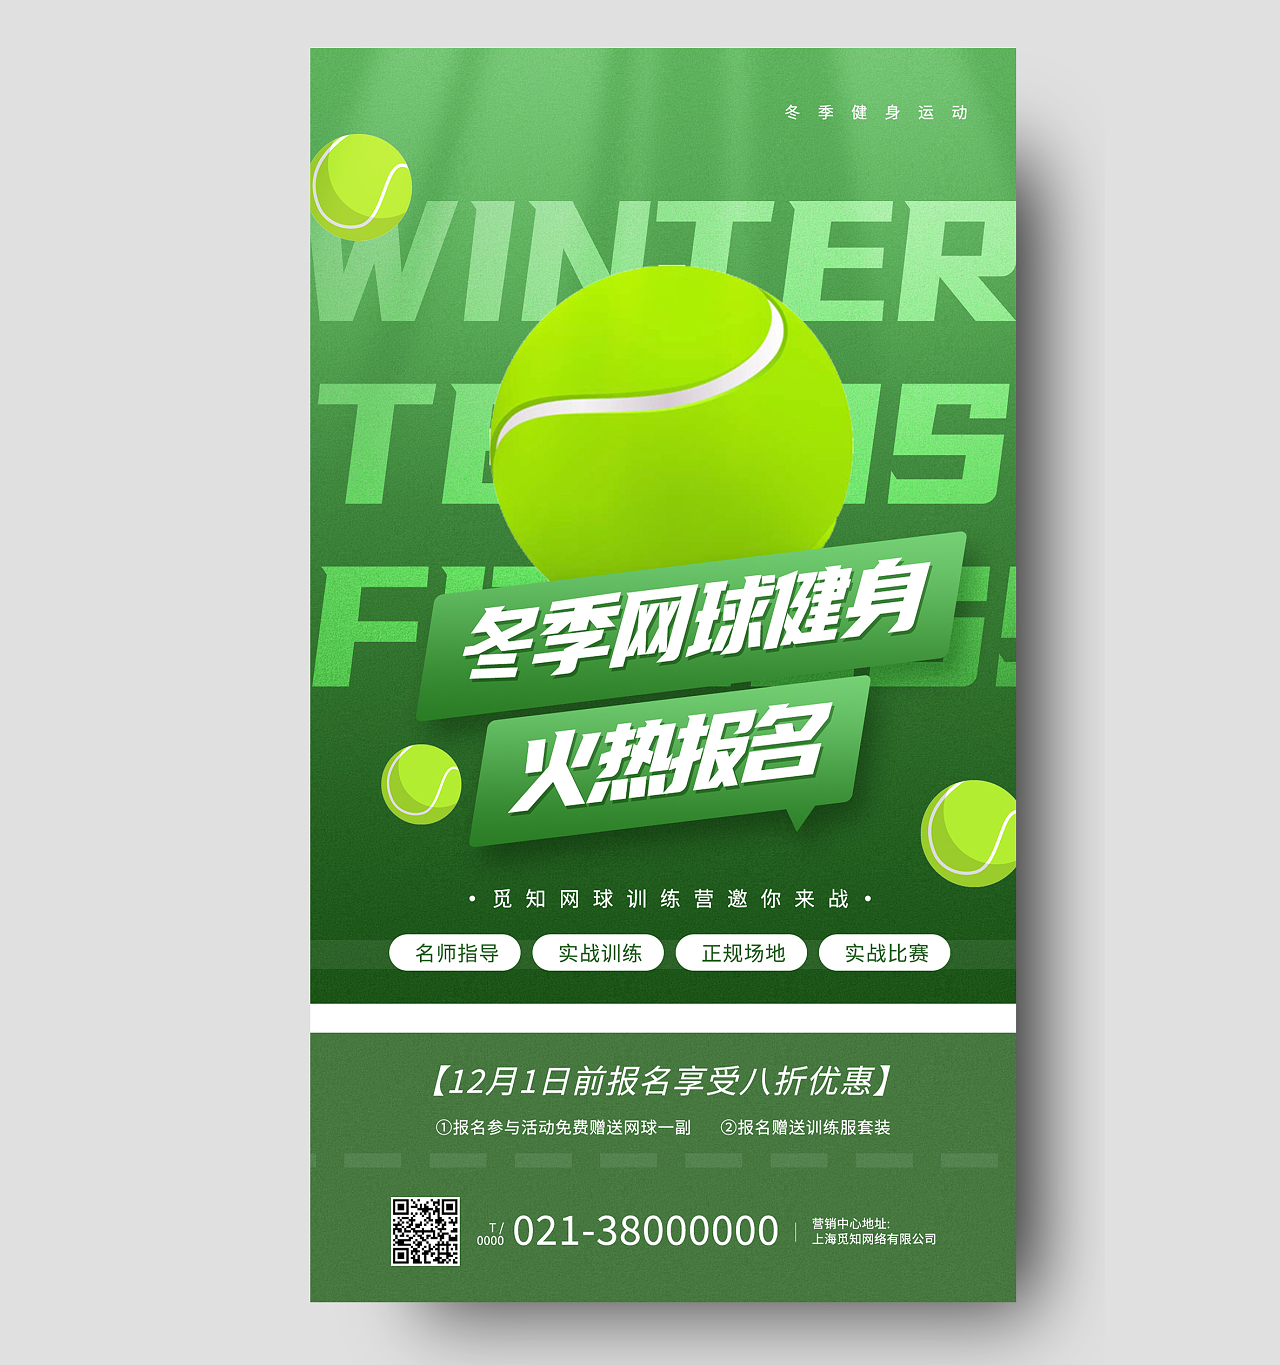 绿色简约冬季网球健身火热报名健身手机海报